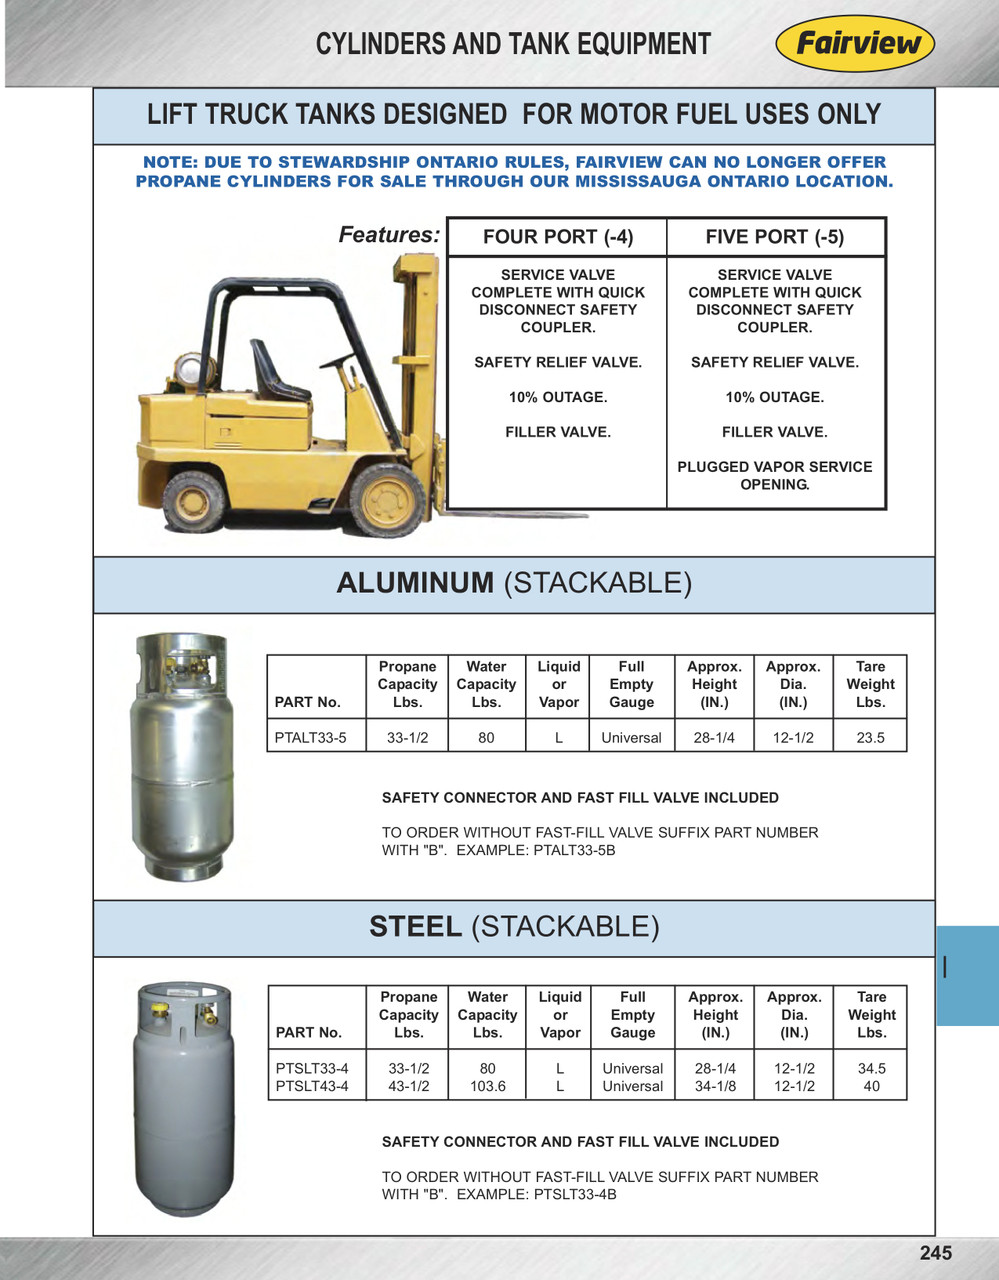 33-1/2 lb.  Fork Lift Propane Cylinder - Stackable  PTSLT33-4